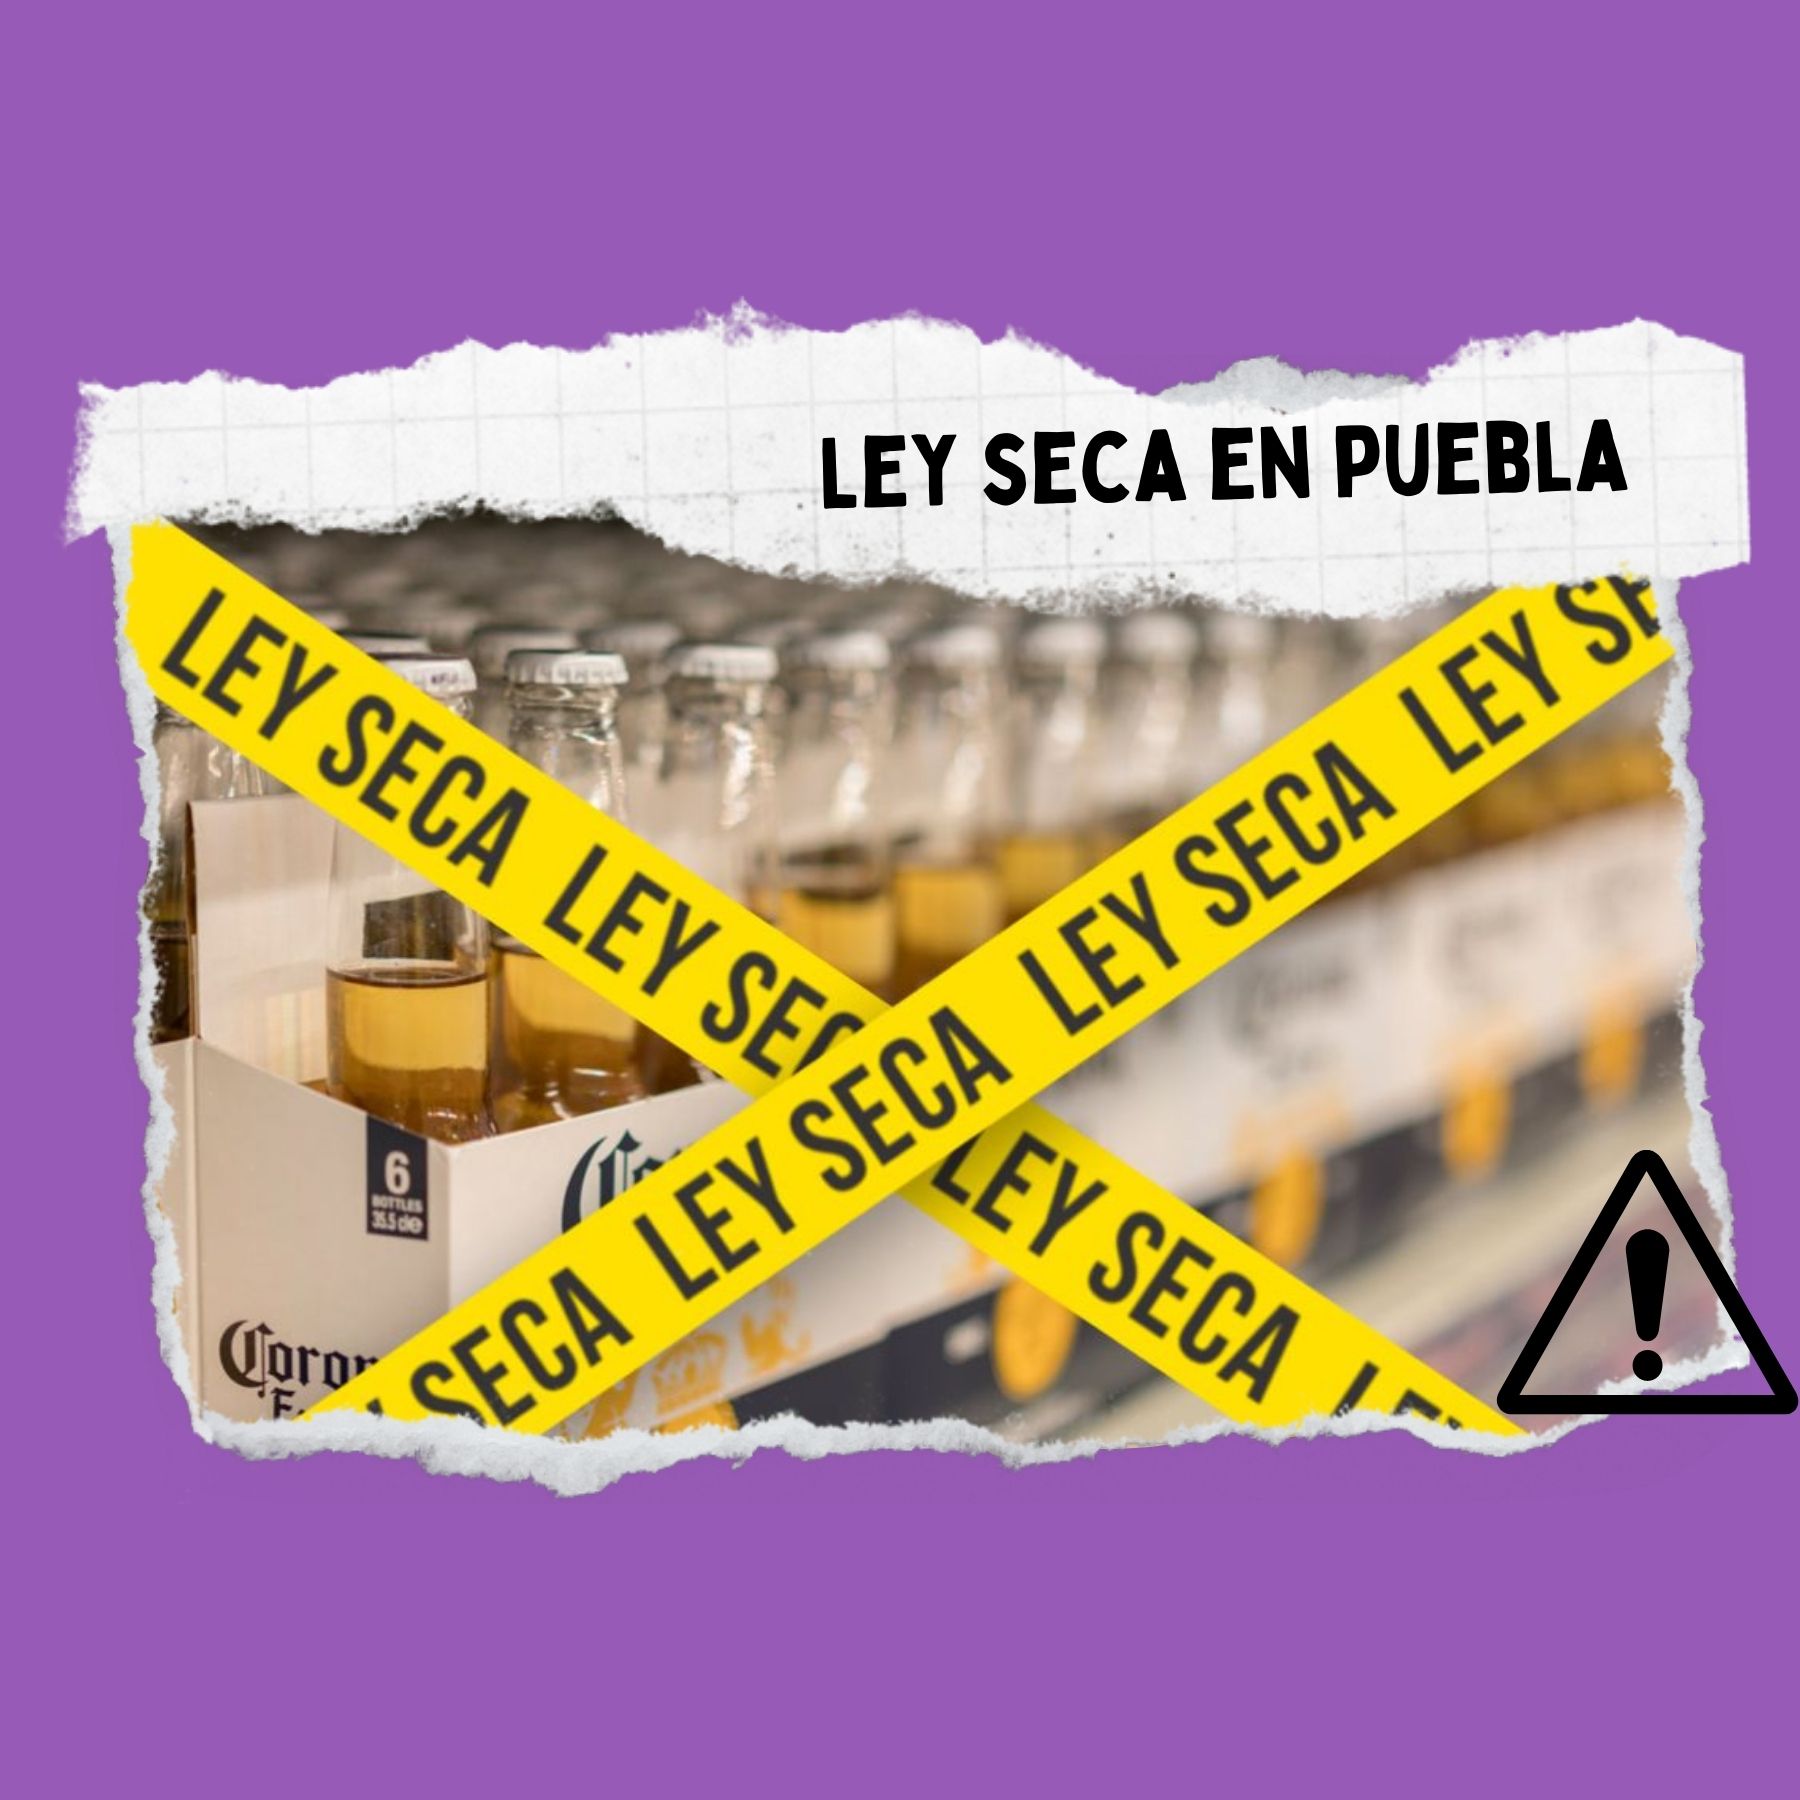 Ley Seca en Puebla